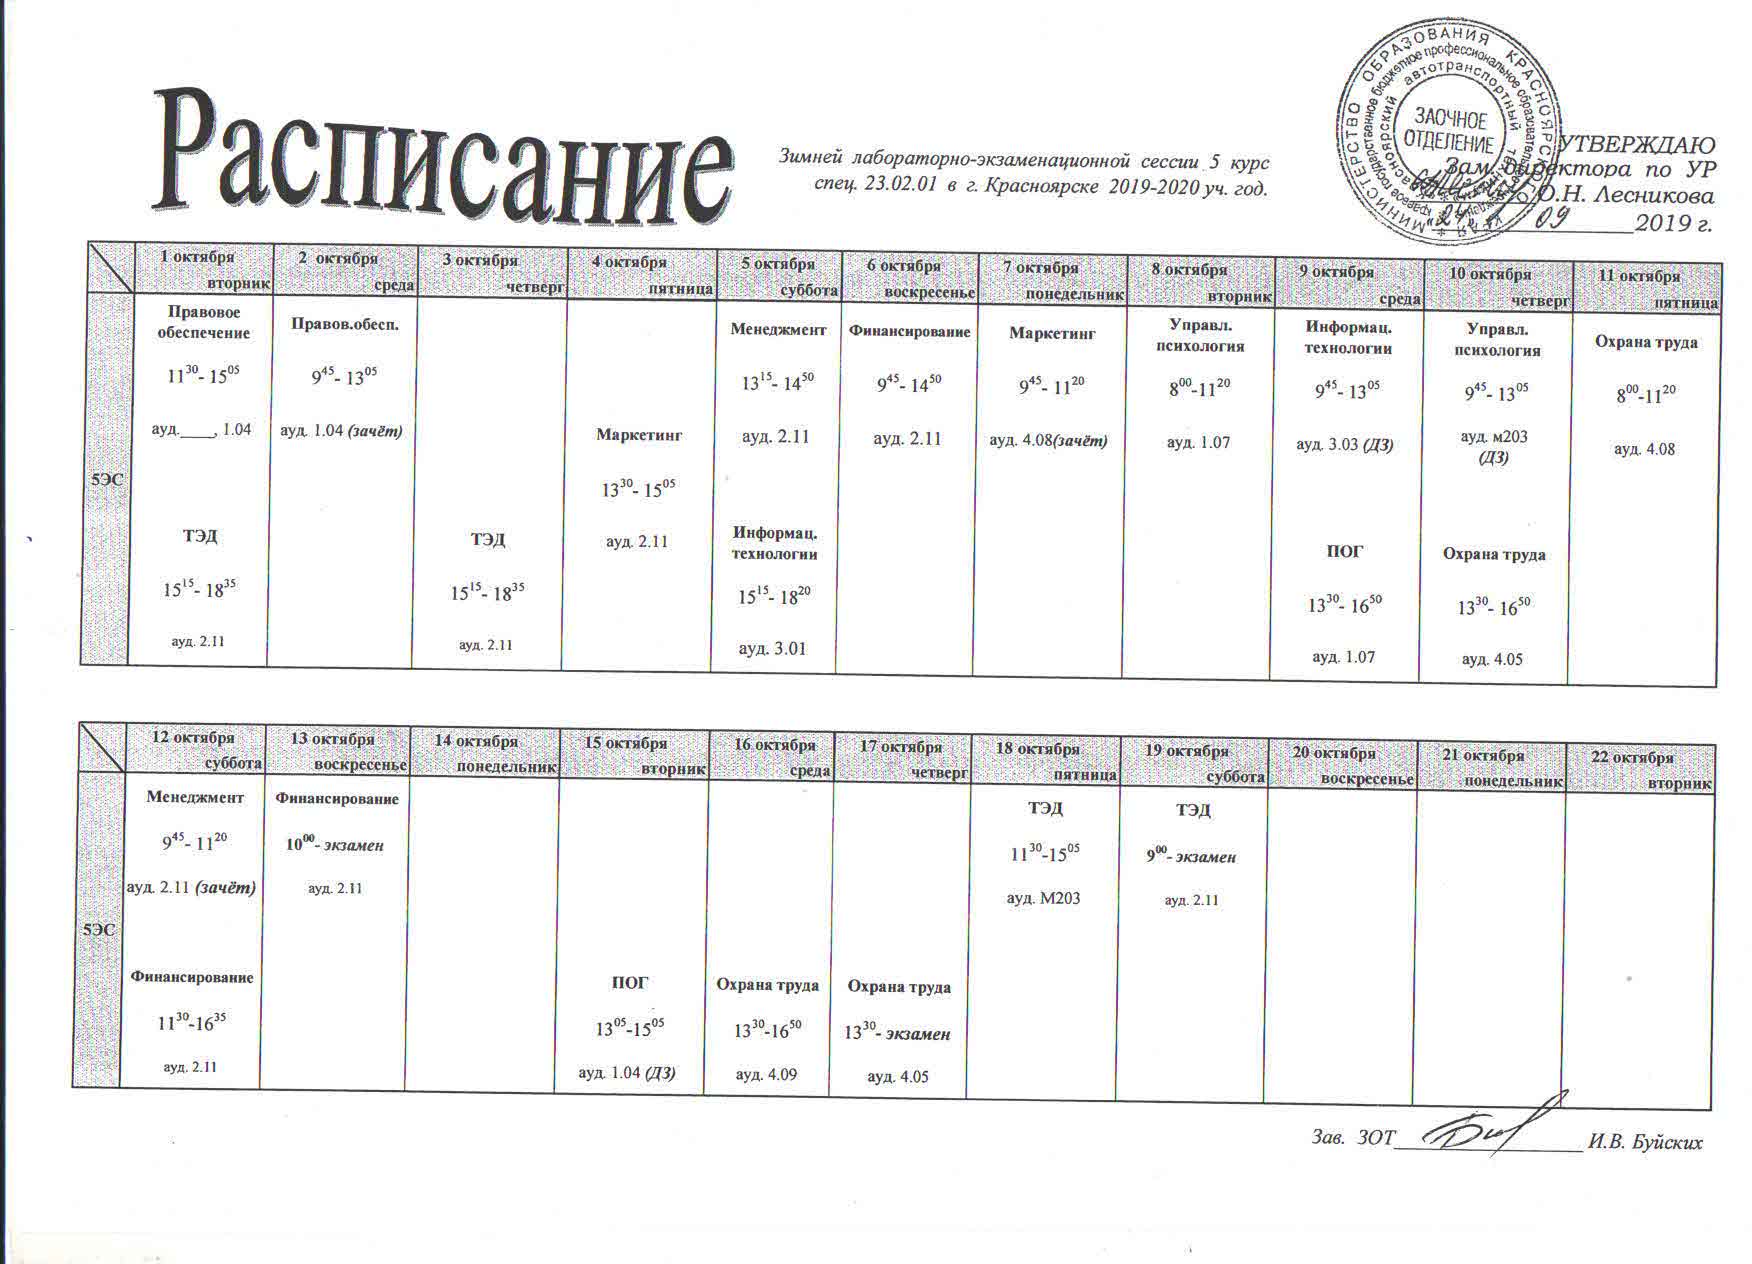 Автотранспортный техникум Красноярск расписание занятий